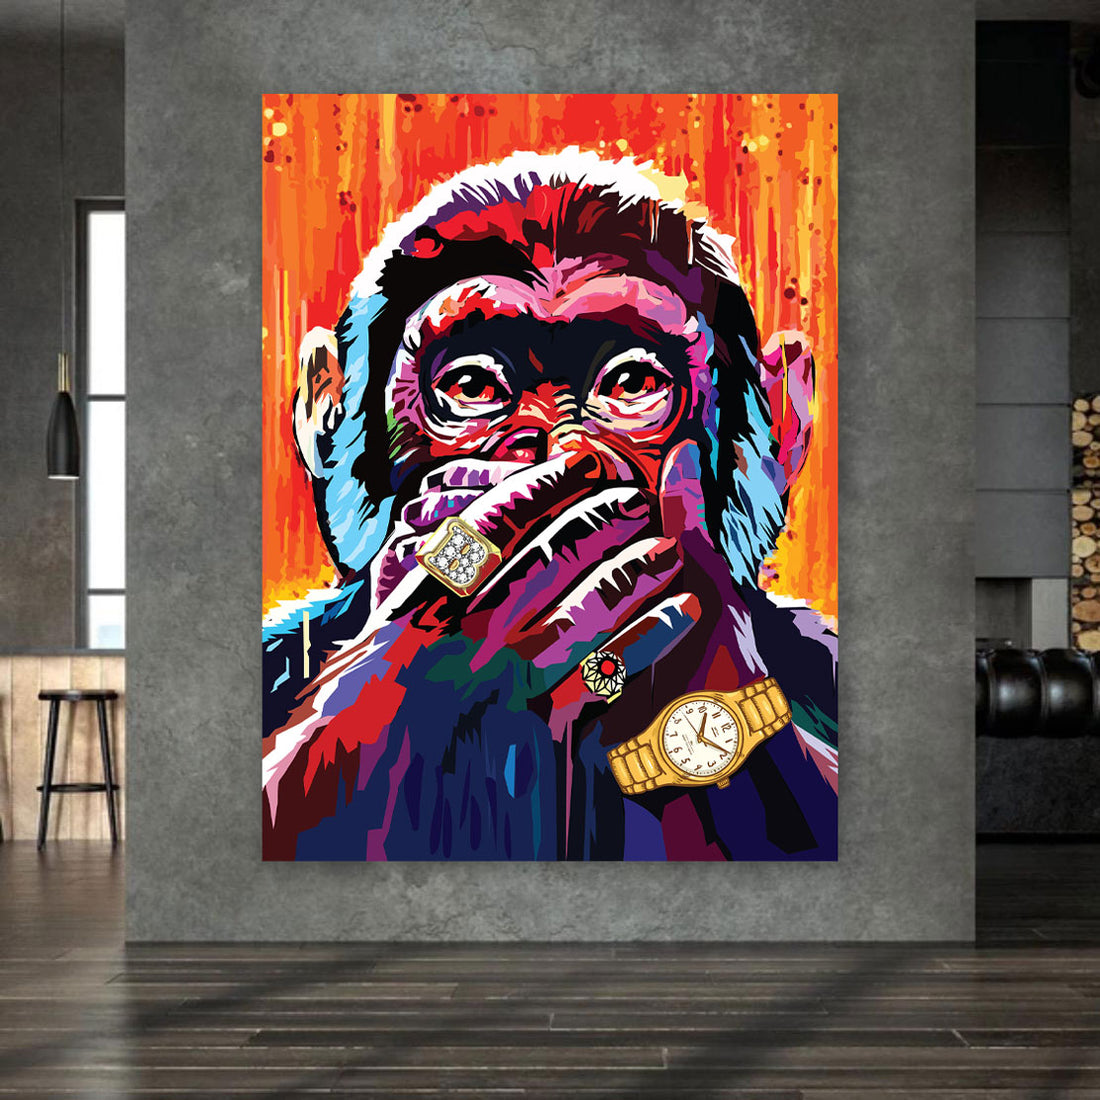 Wandbild Pop Art Affe sagt nichts, Colour